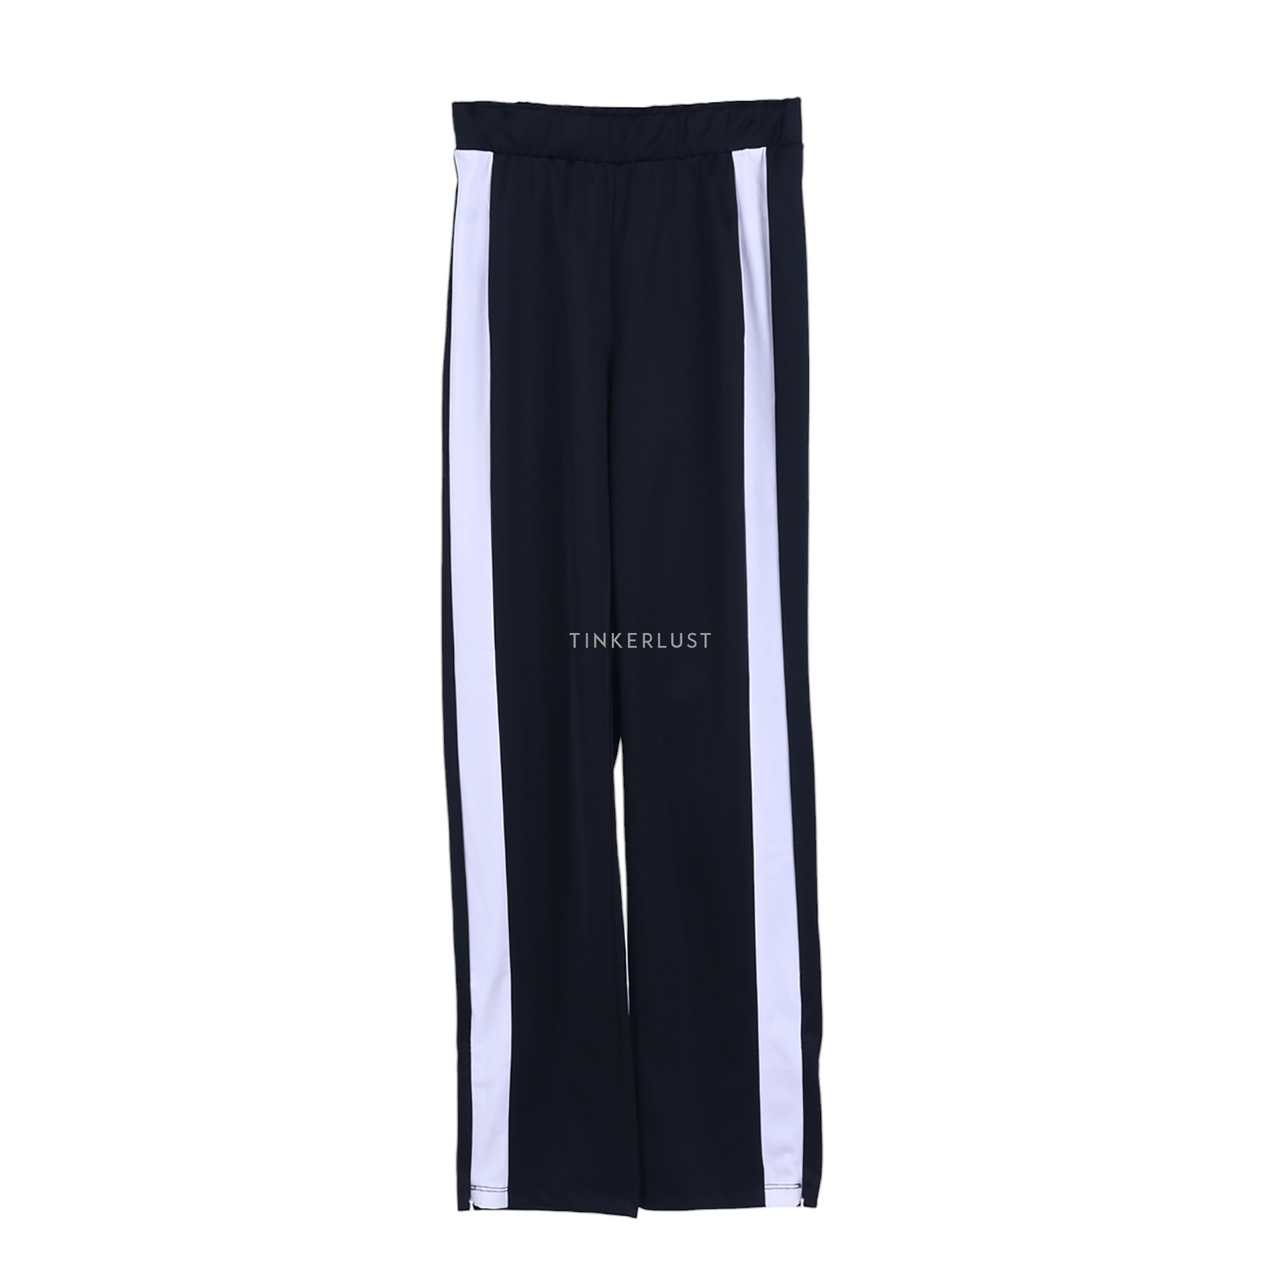 H&M Black & White Long Pants